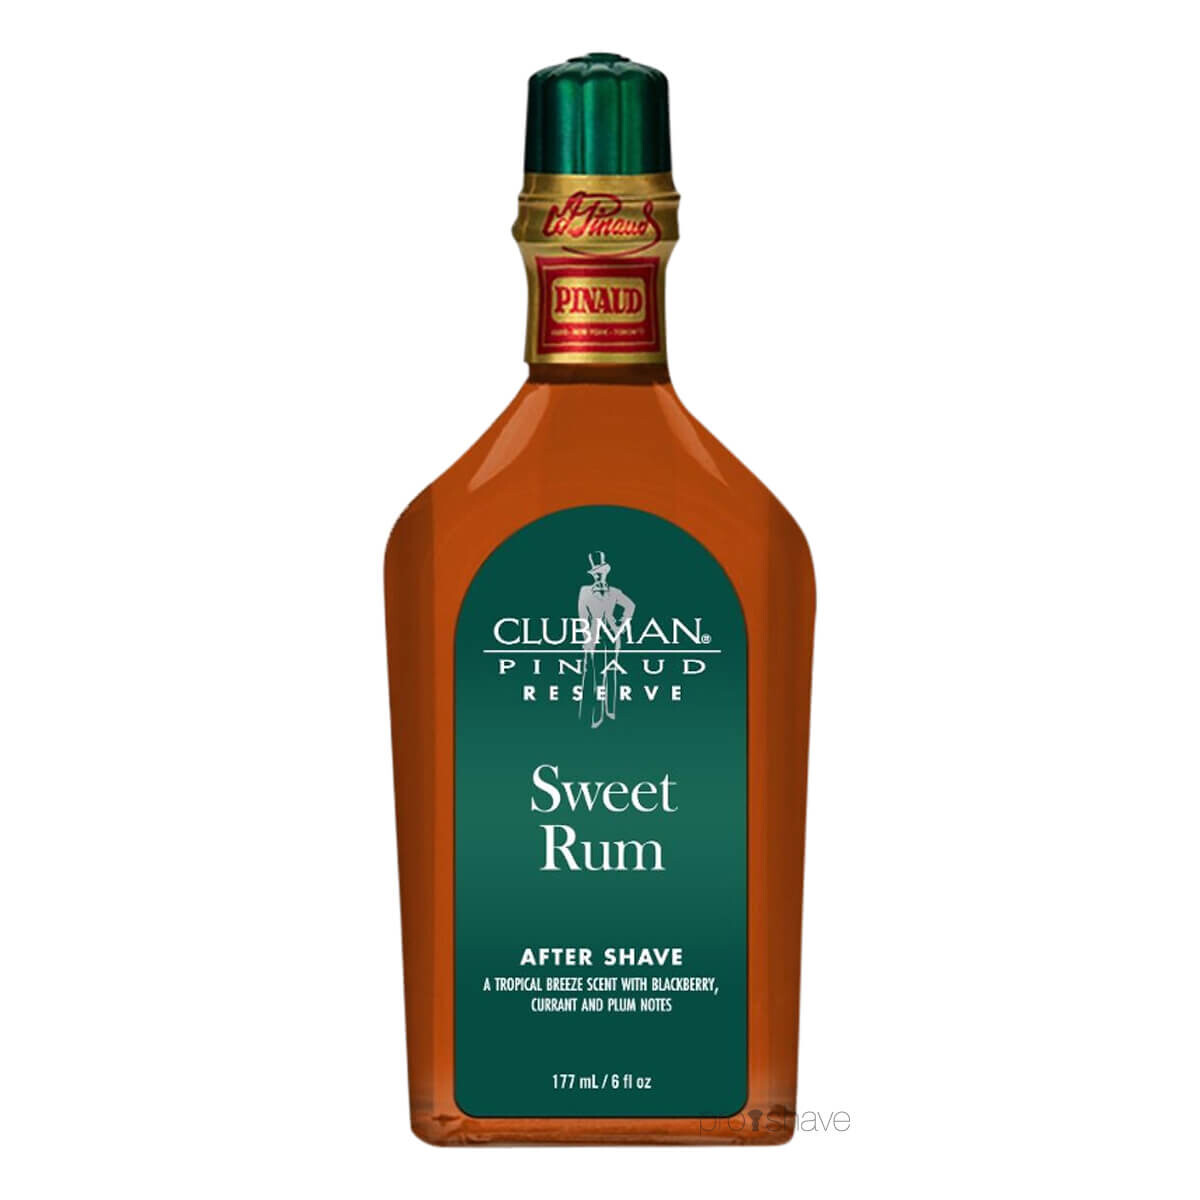 Billede af Pinaud Clubman Reserve Aftershave Sweet Rum, 177 ml.